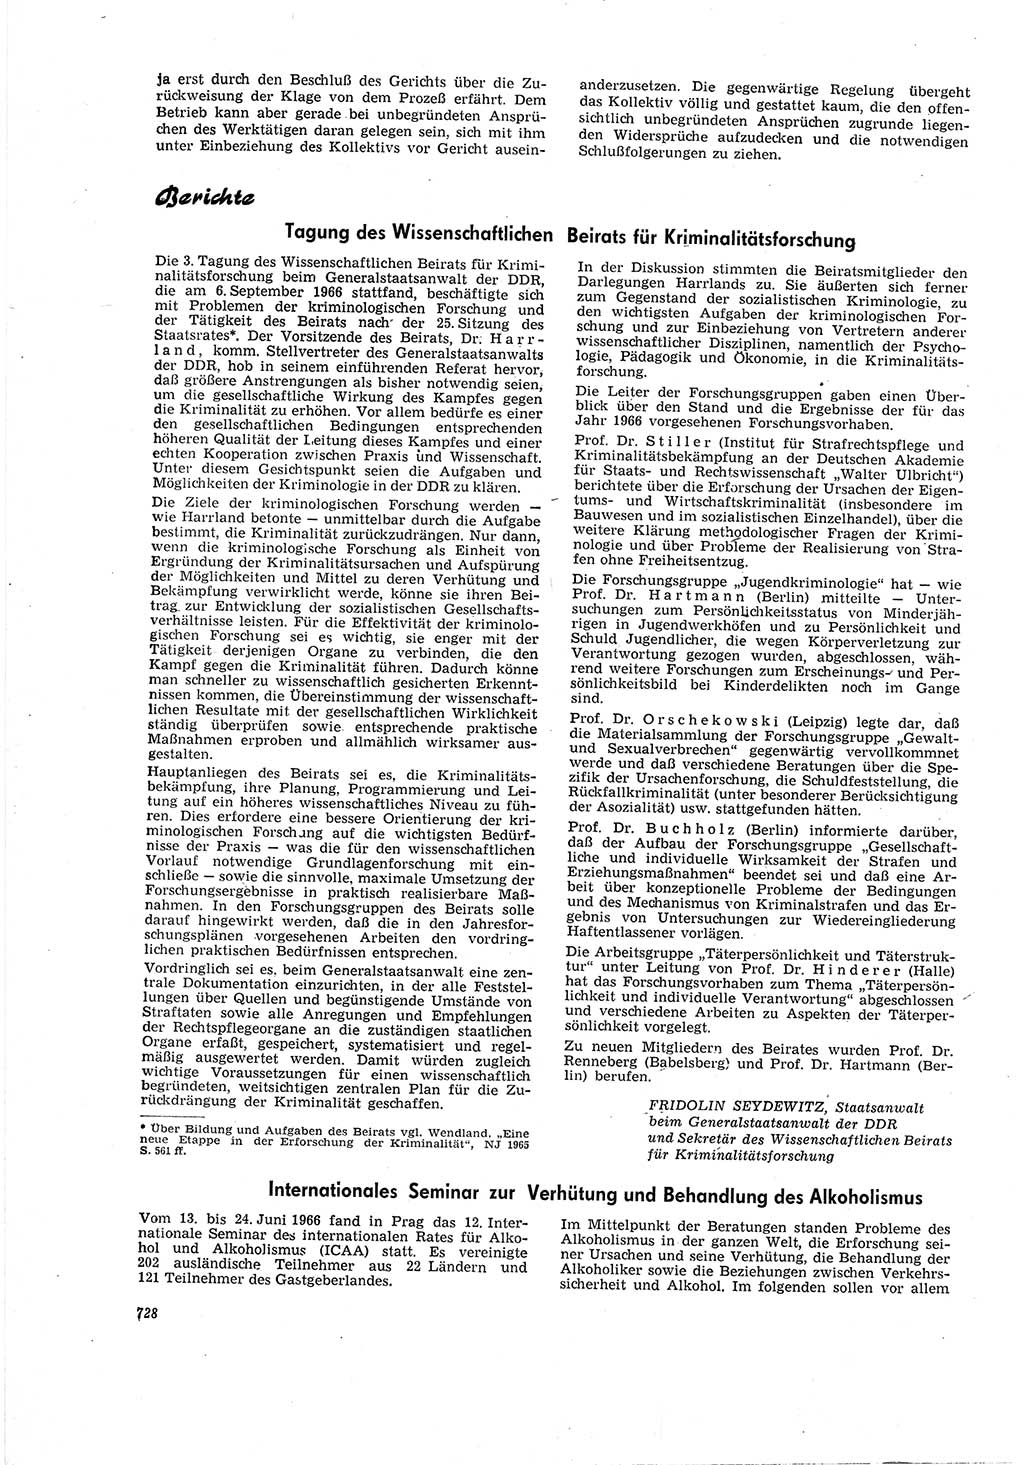 Neue Justiz (NJ), Zeitschrift für Recht und Rechtswissenschaft [Deutsche Demokratische Republik (DDR)], 20. Jahrgang 1966, Seite 728 (NJ DDR 1966, S. 728)